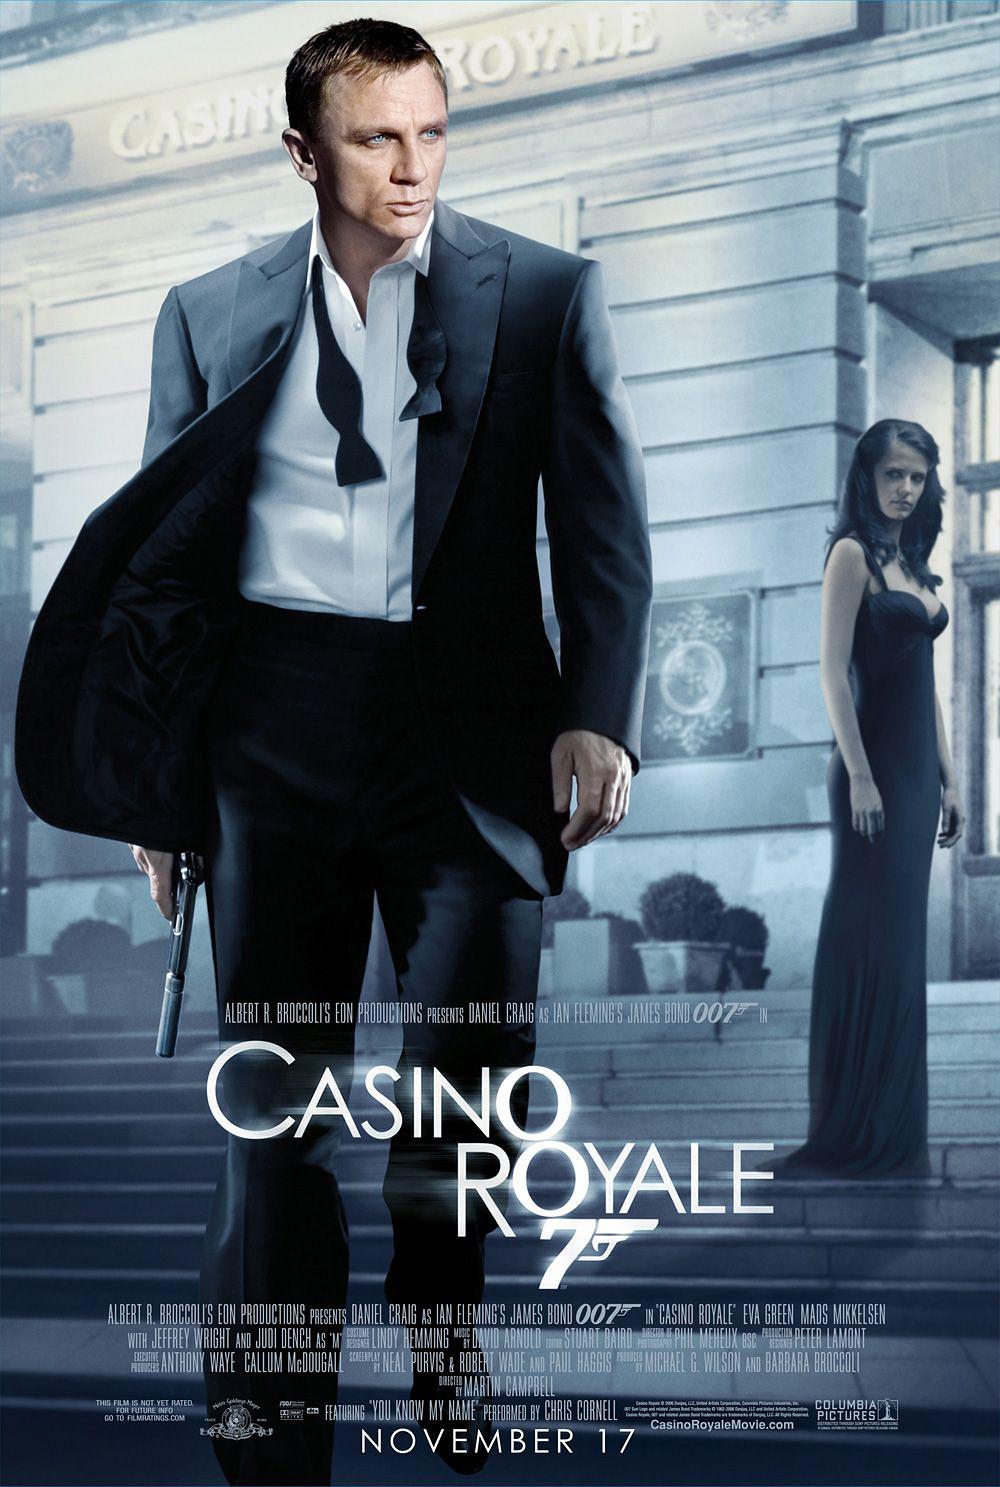 007:大战皇家赌场/007大战皇家赌场 Casino.Royale.2006.2160p.BluRay.HEVC.DTS-HD.MA.5.1-COASTER 61.52GB-1.png